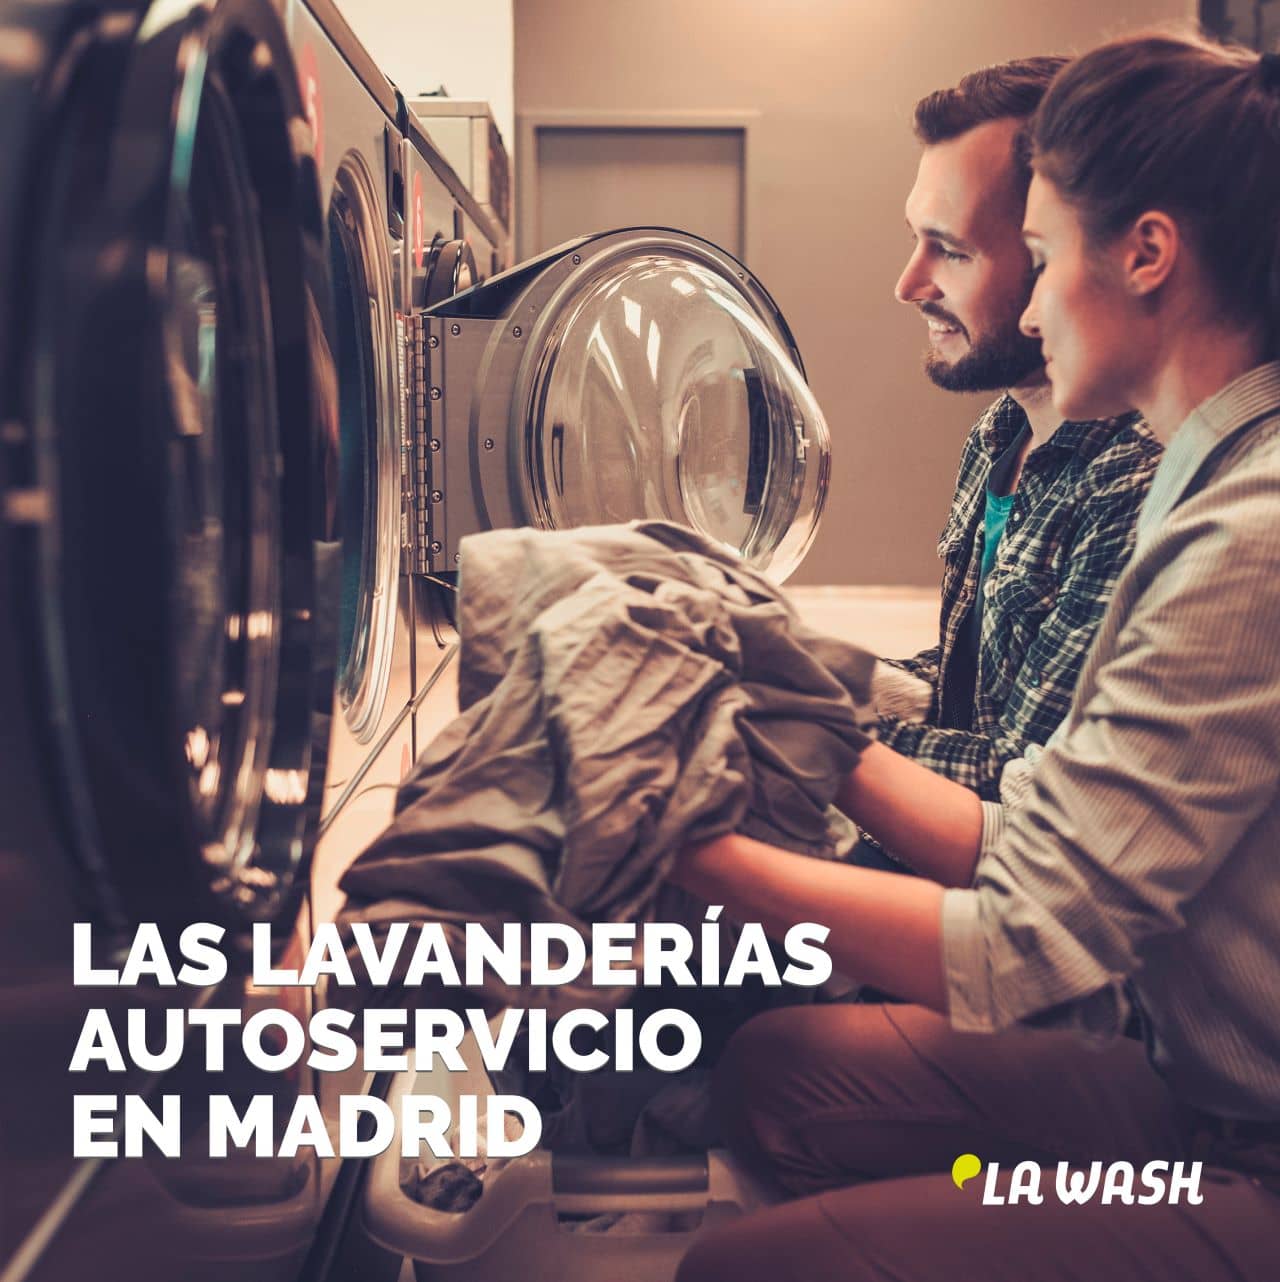 Las lavanderías autoservicio en Madrid han experimentado un notable cambio desde su inicio en 2011.